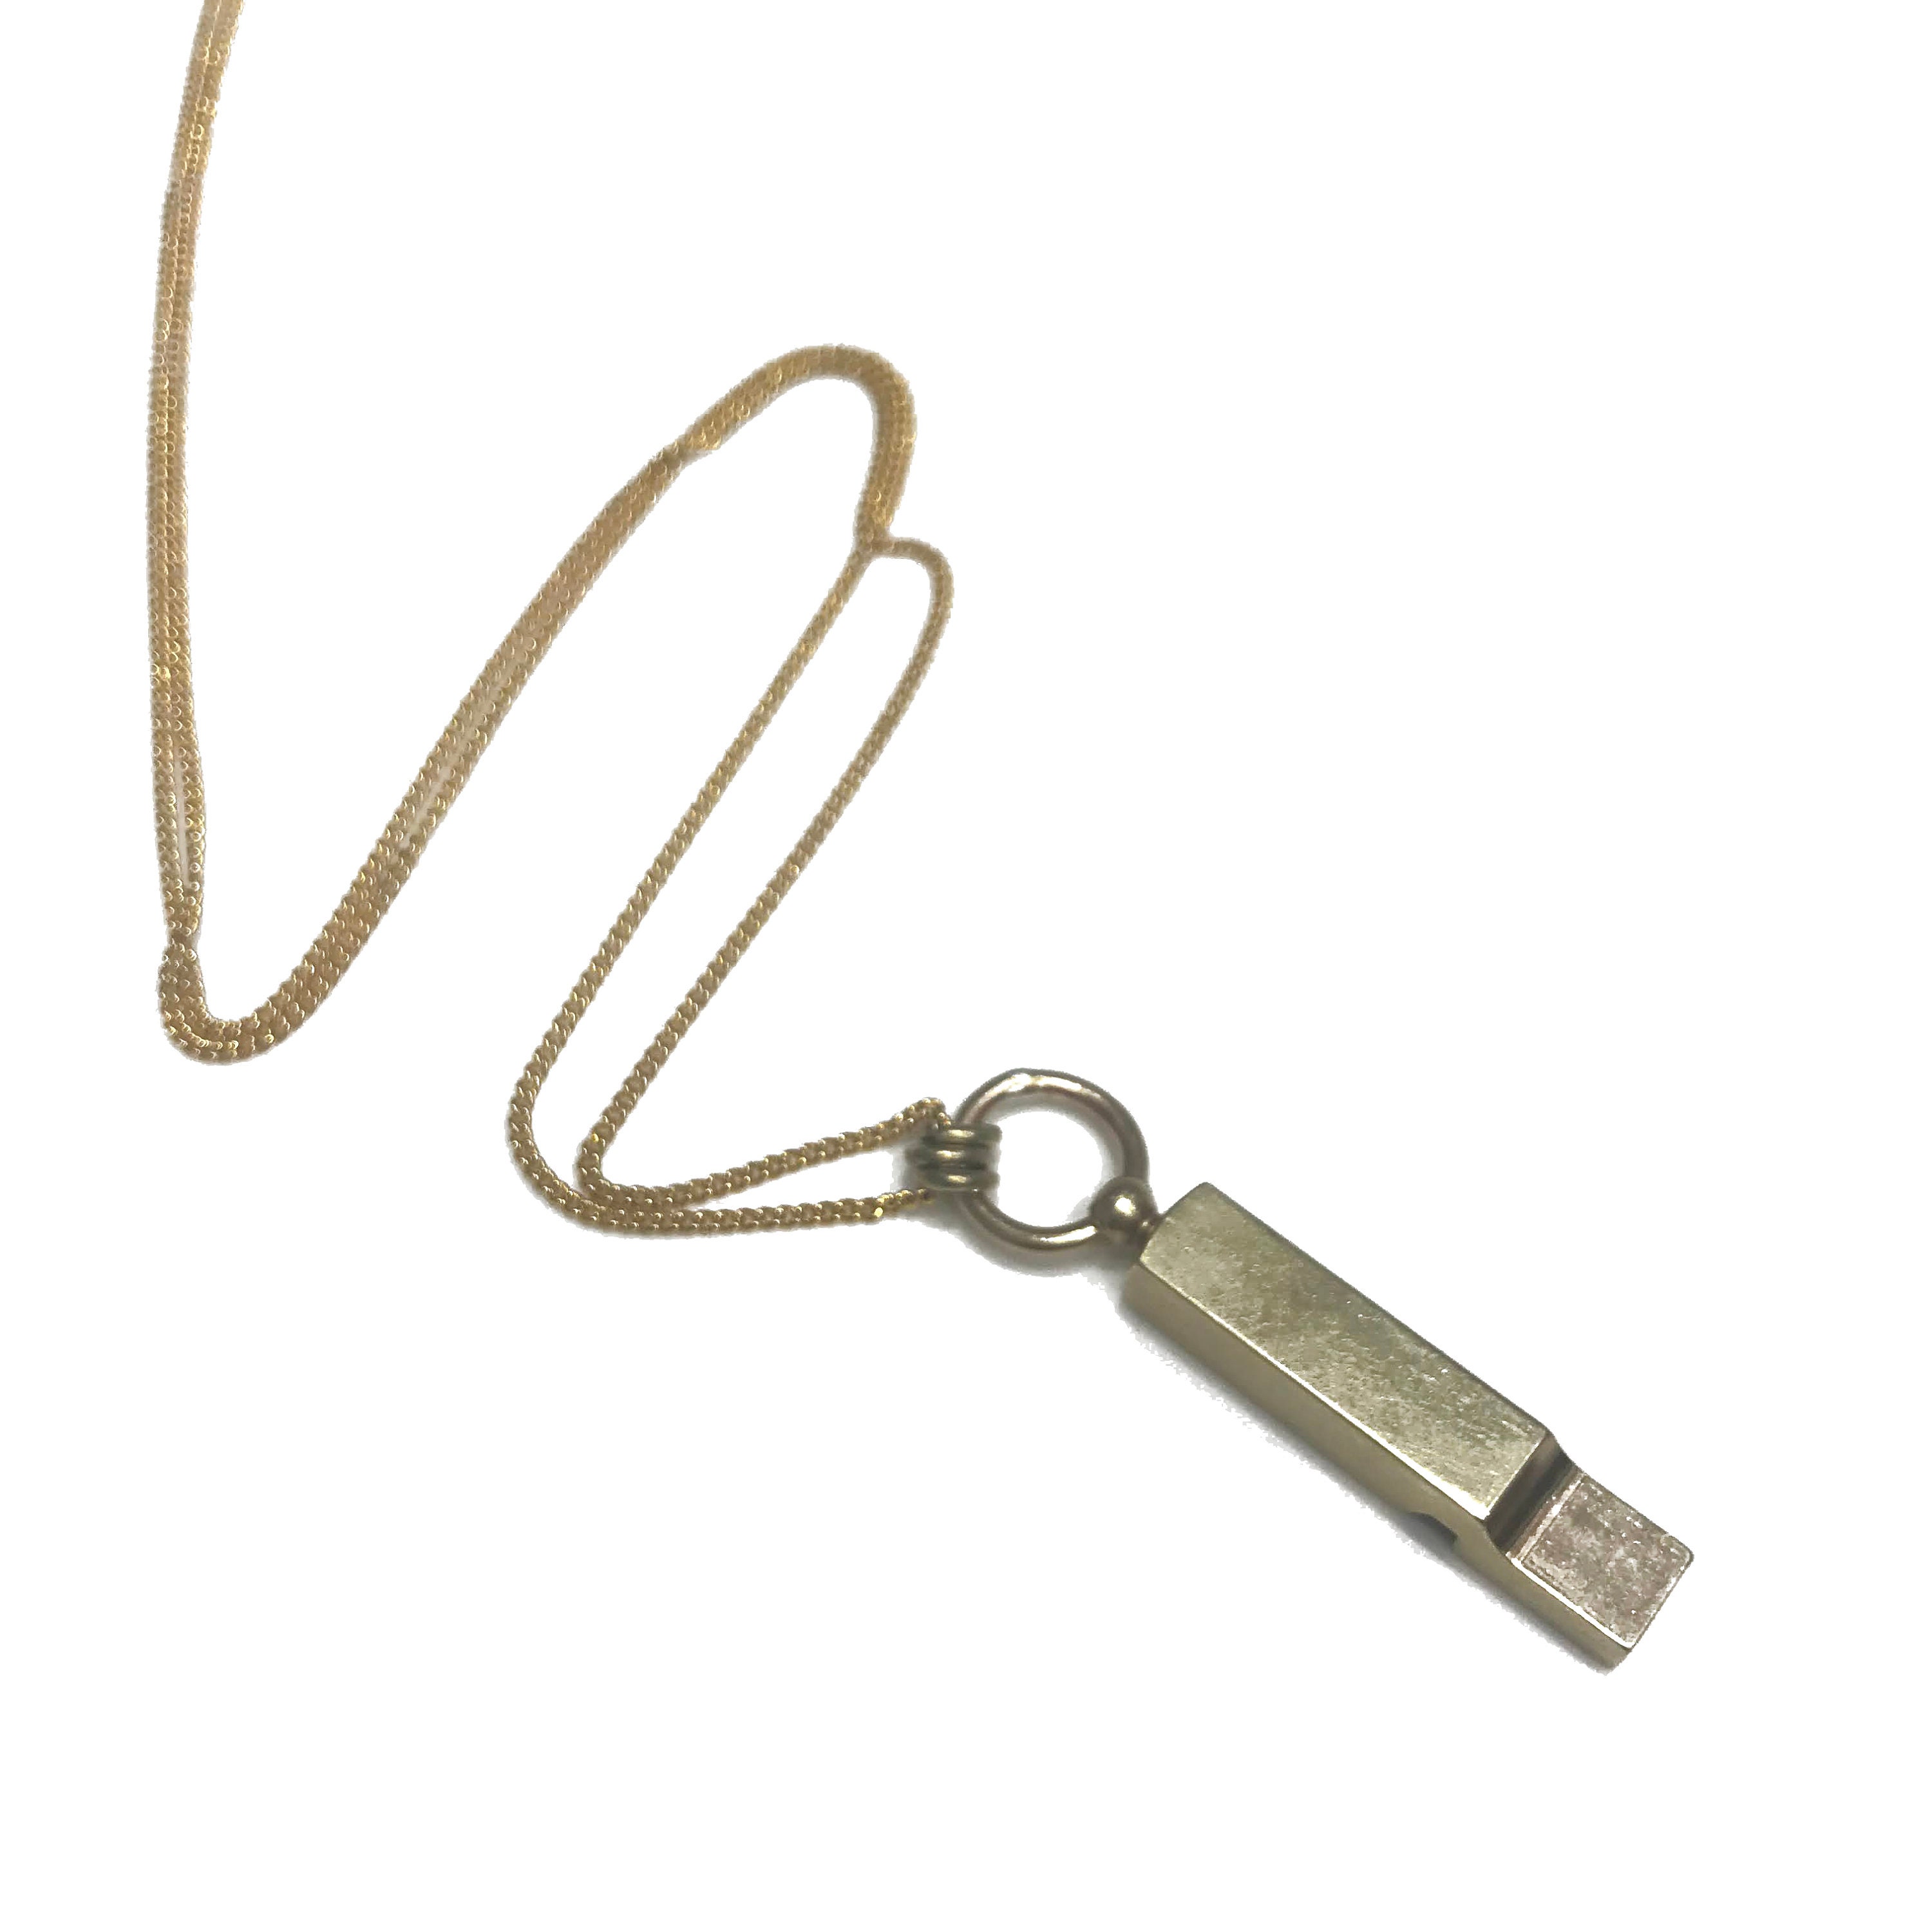 LOUIS VUITTON LV Whistle Chain Pendant Necklace Silver 560518